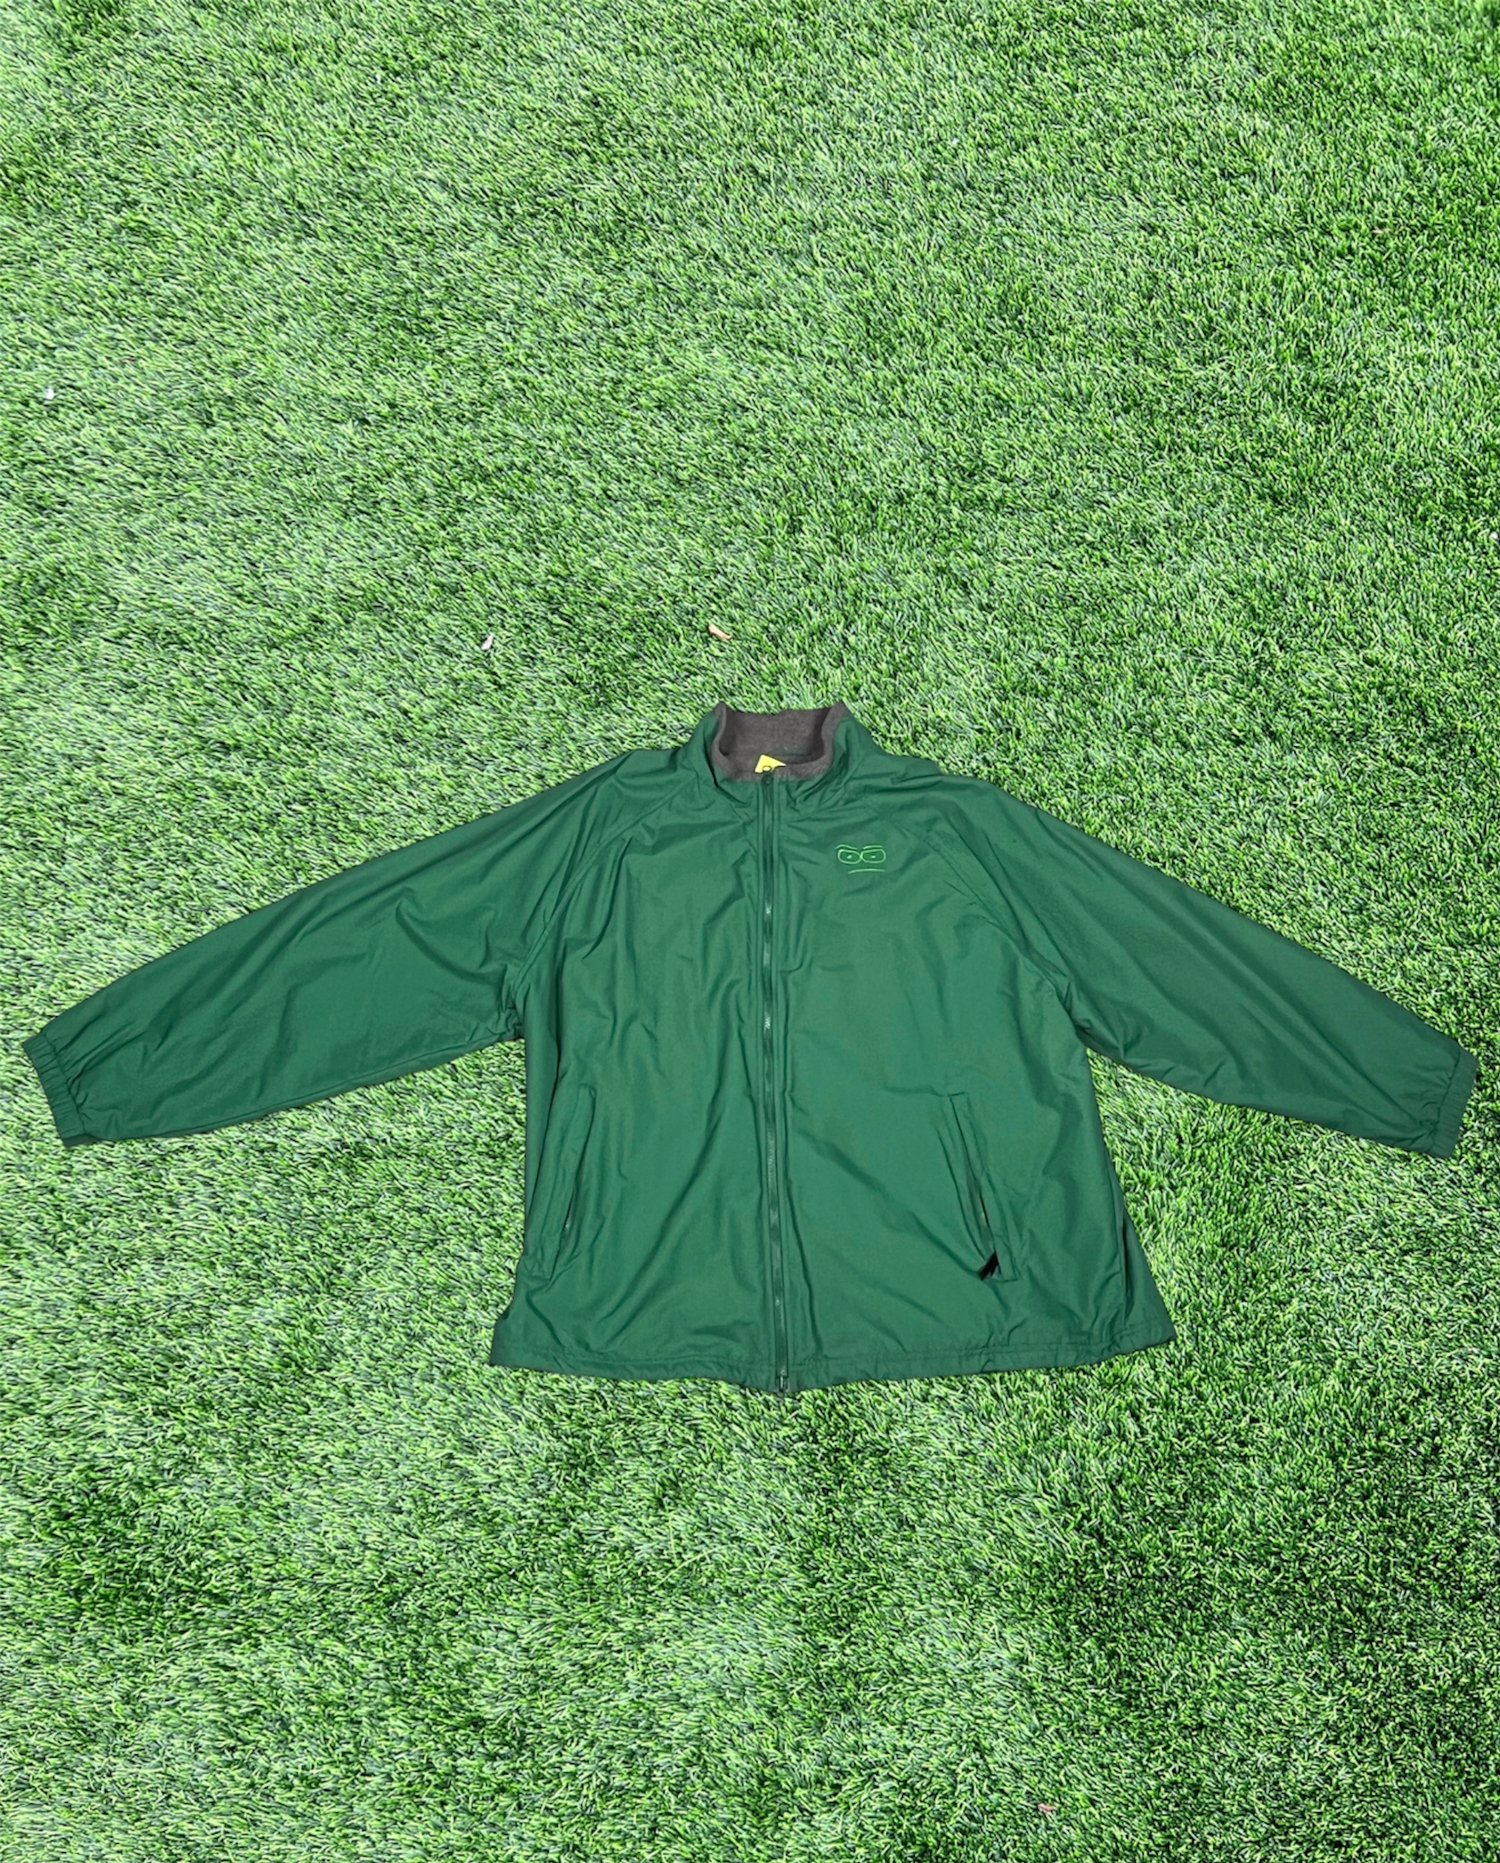 RBF Renewal - Green Windbreaker Jacket